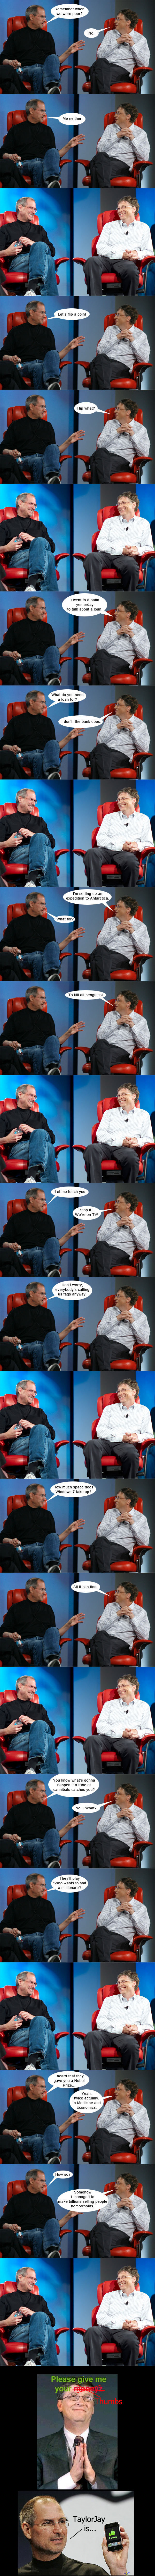 Bill Gates ja Steve Jobs